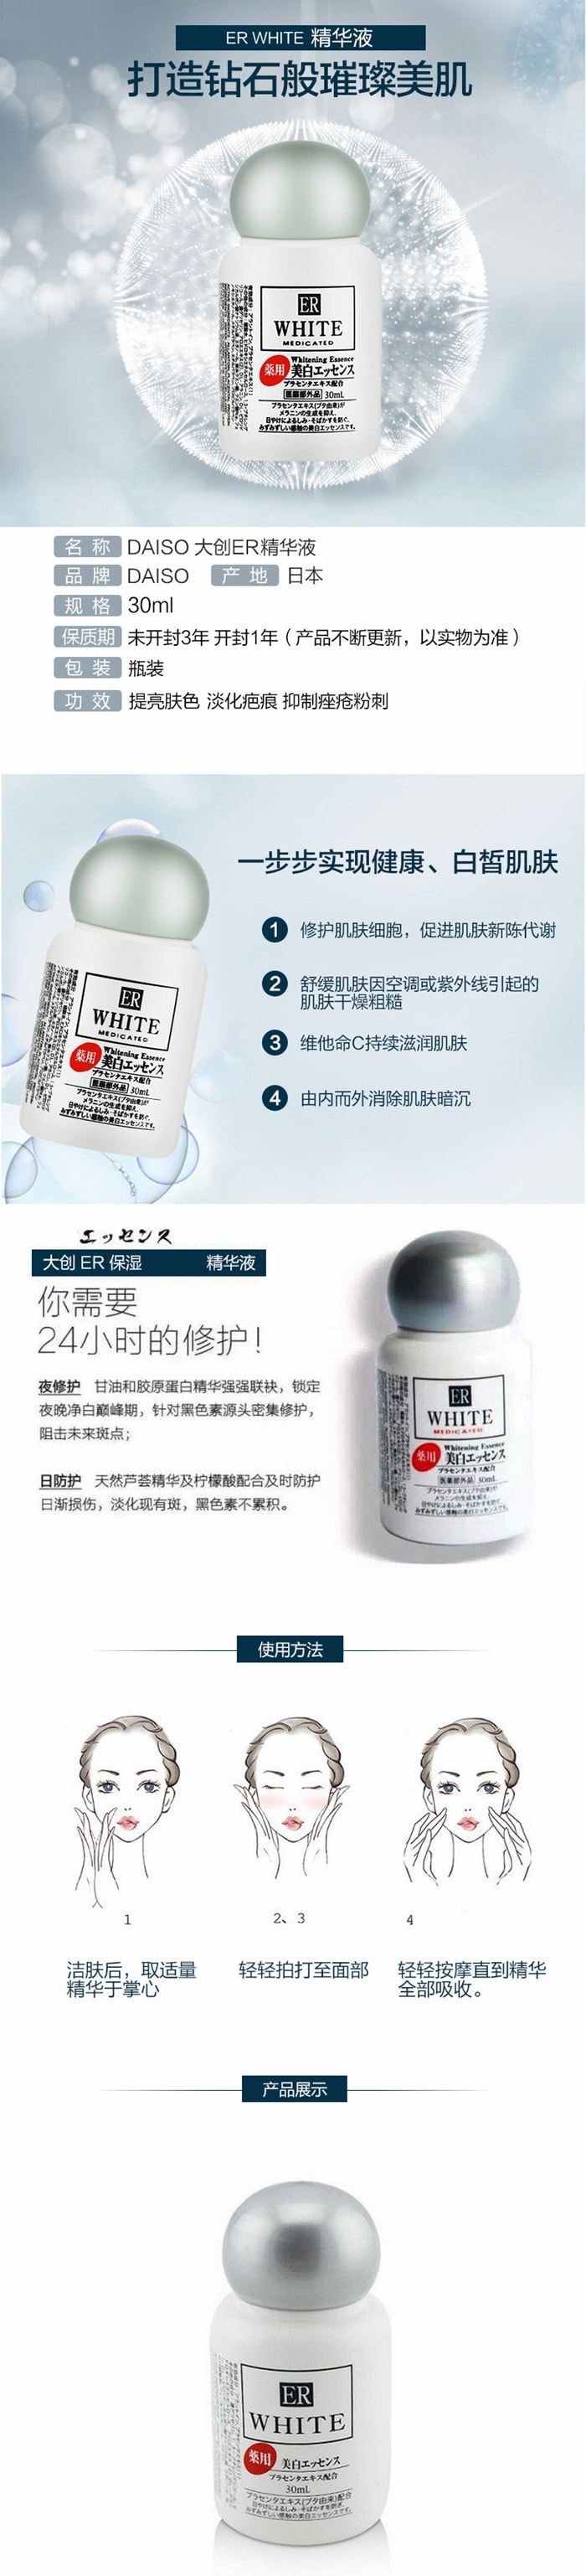 【日本直邮】日本 DAISO 大创 ER胎盘素美白精华液30ml 晒后修复